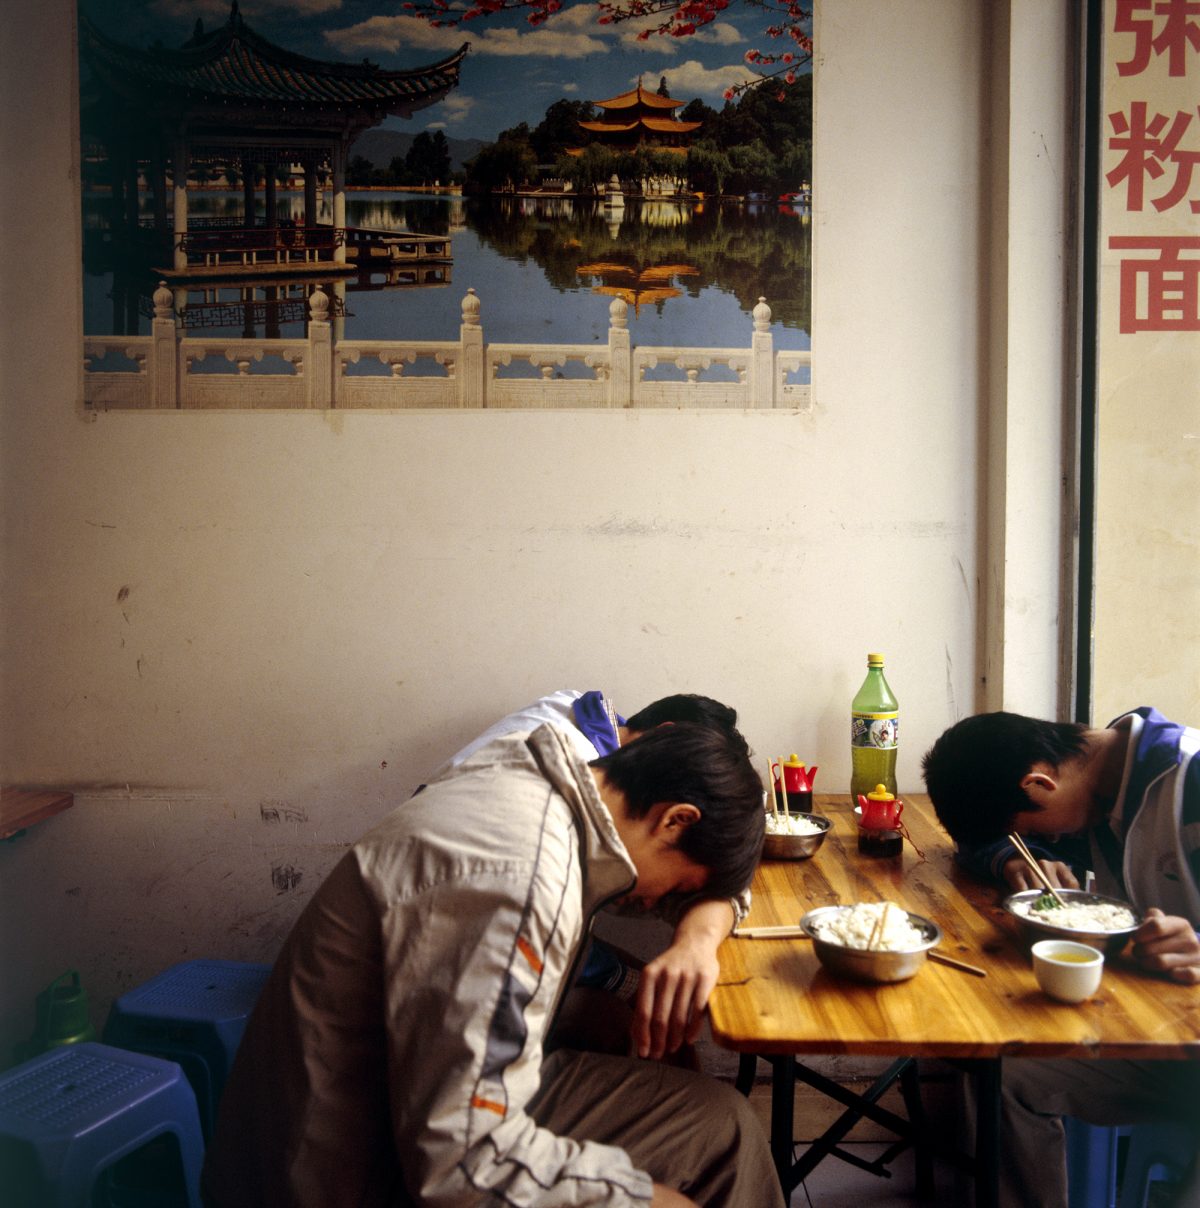 Image extraite de la série "China Dreaming" / © Olivia Martin McGuire